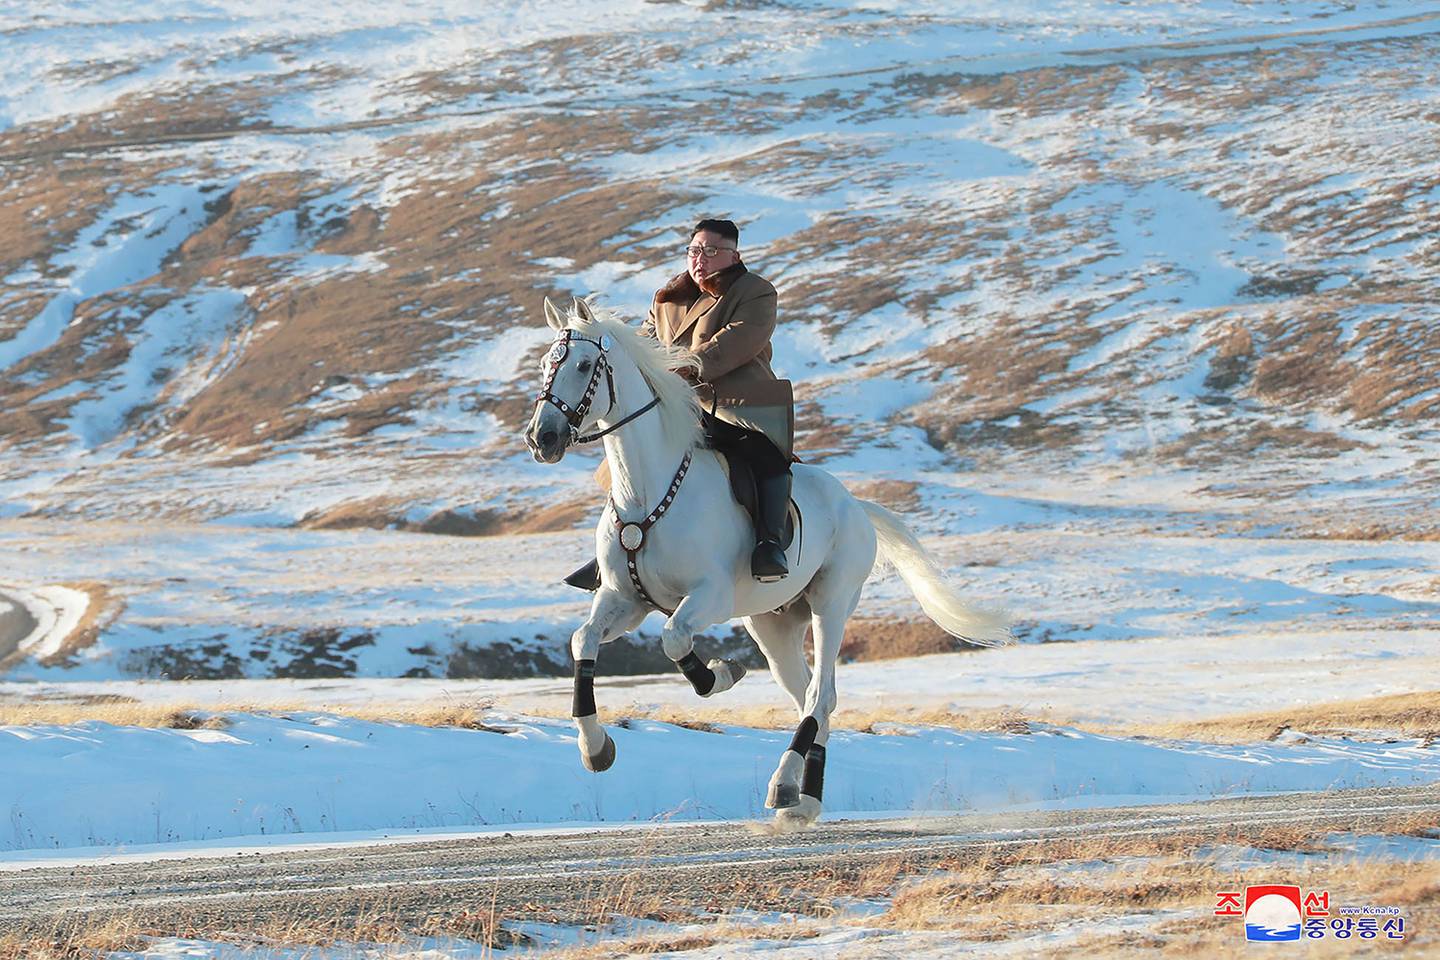 Kim Jong Un rides a white horse